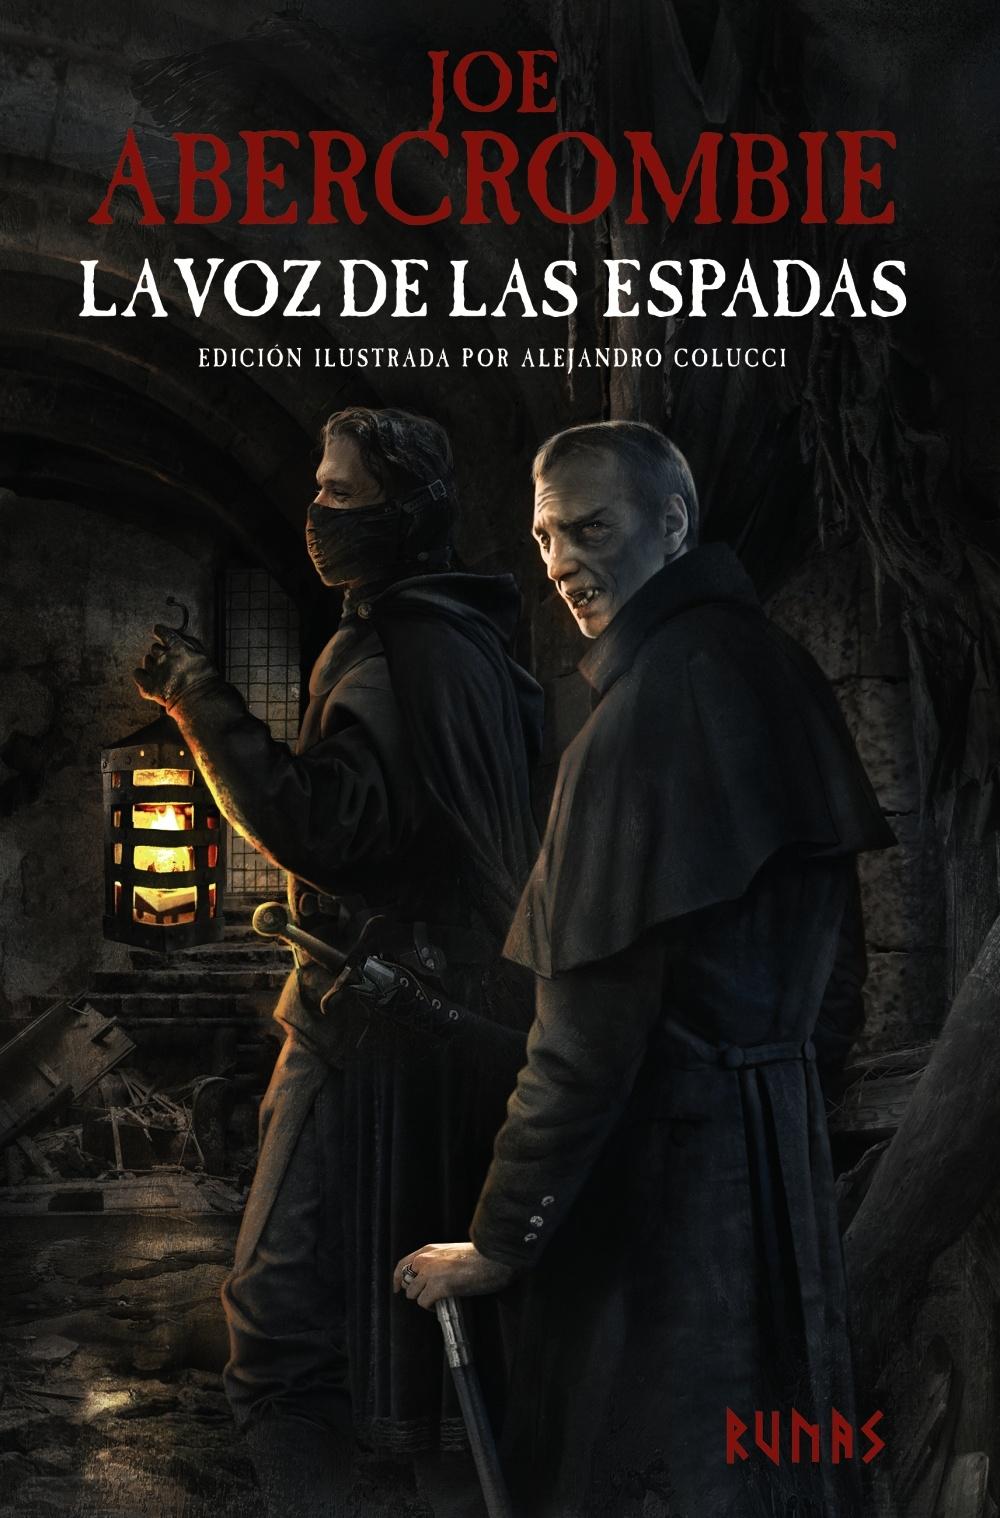 Voz de las espadas, La   "Edición ilustrada"